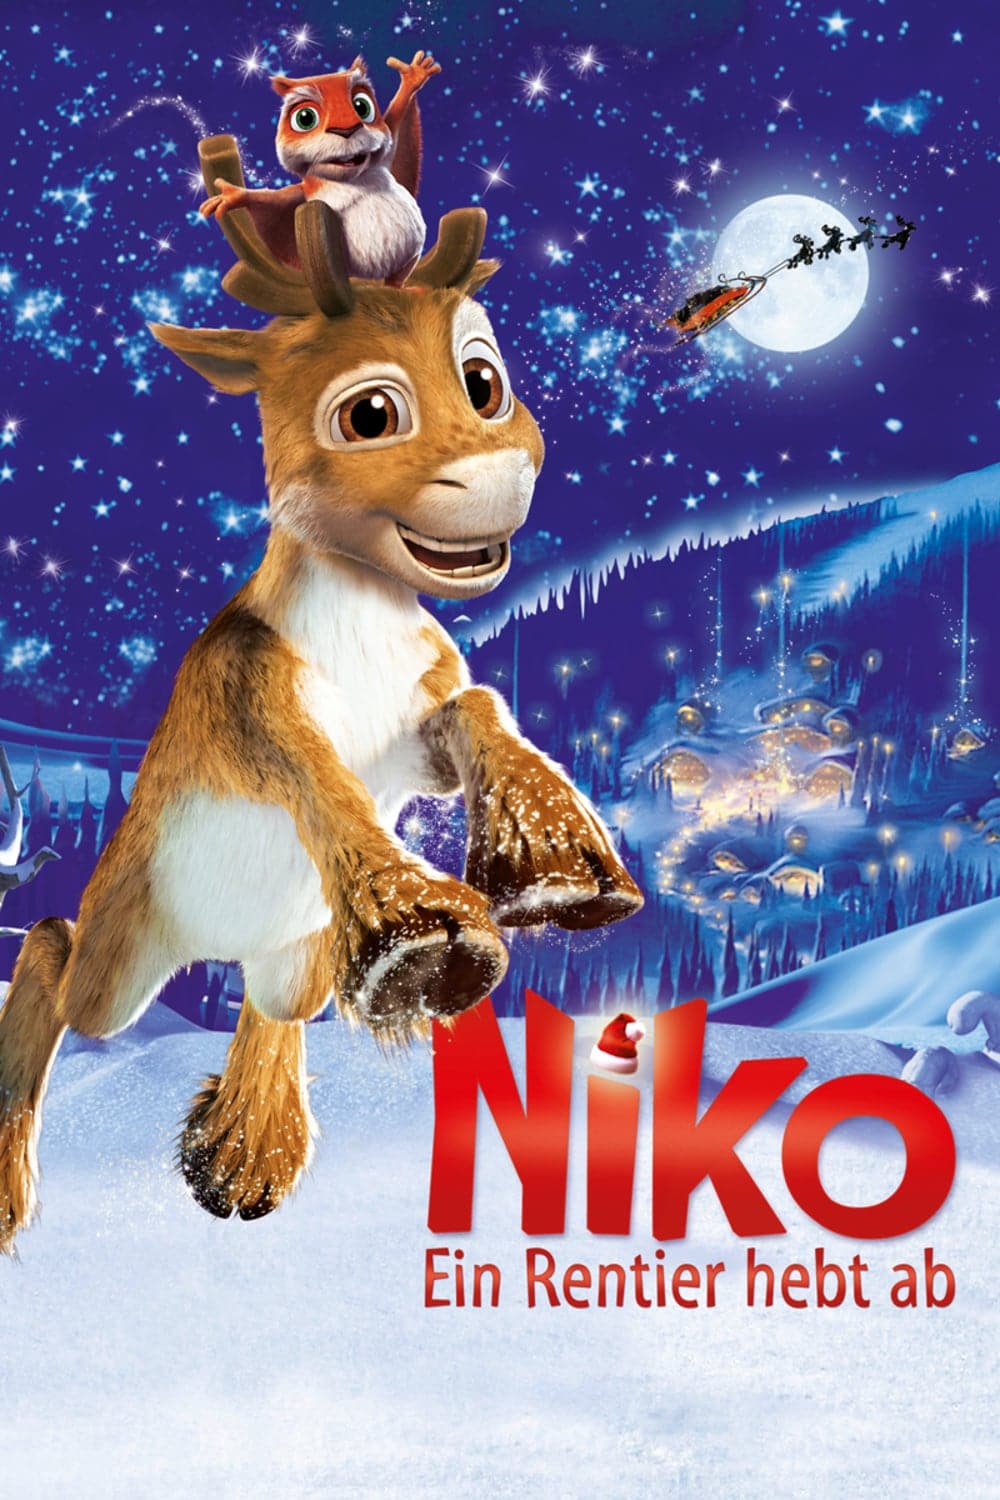 Plakat von "Niko - Ein Rentier hebt ab"